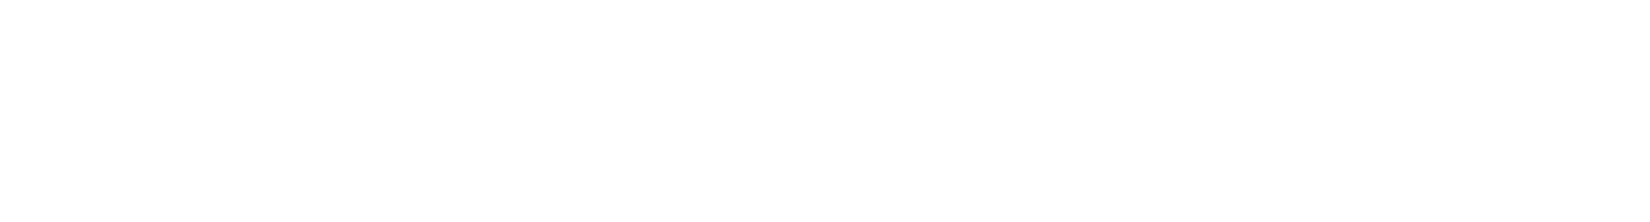 SL2GM_logo-03